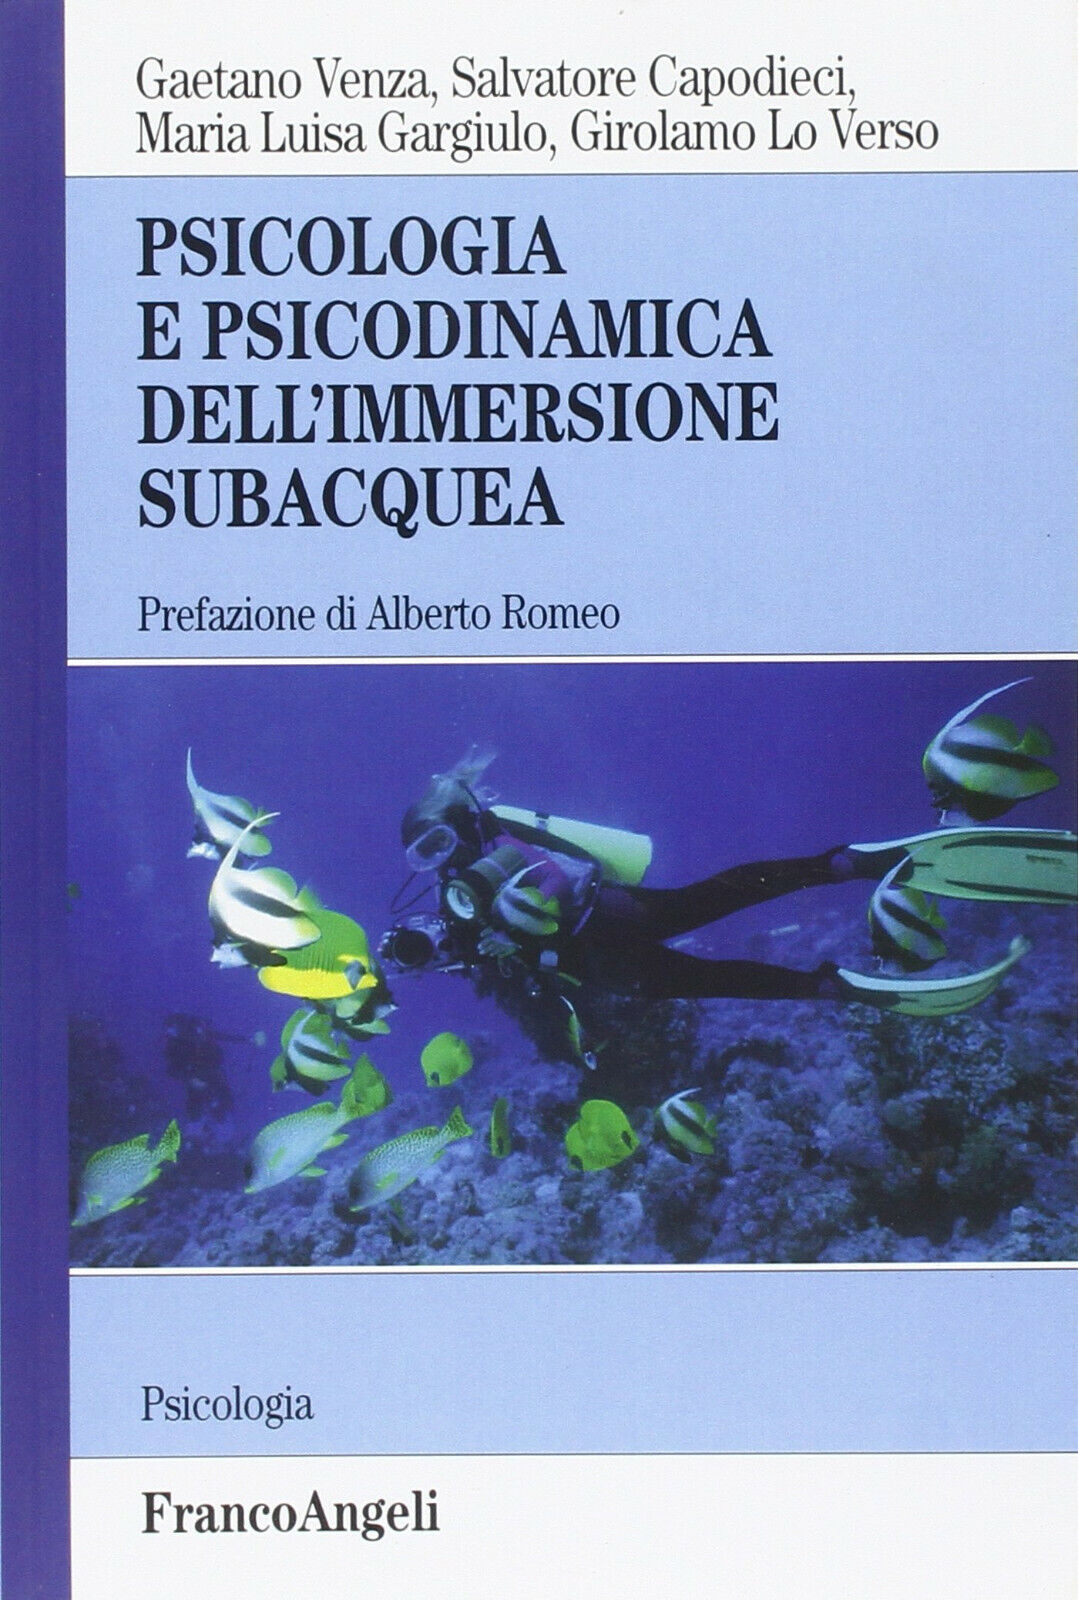 Psicologia e psicodinamica dell'immersione subacquea - Franco Angeli, 2016 libro usato